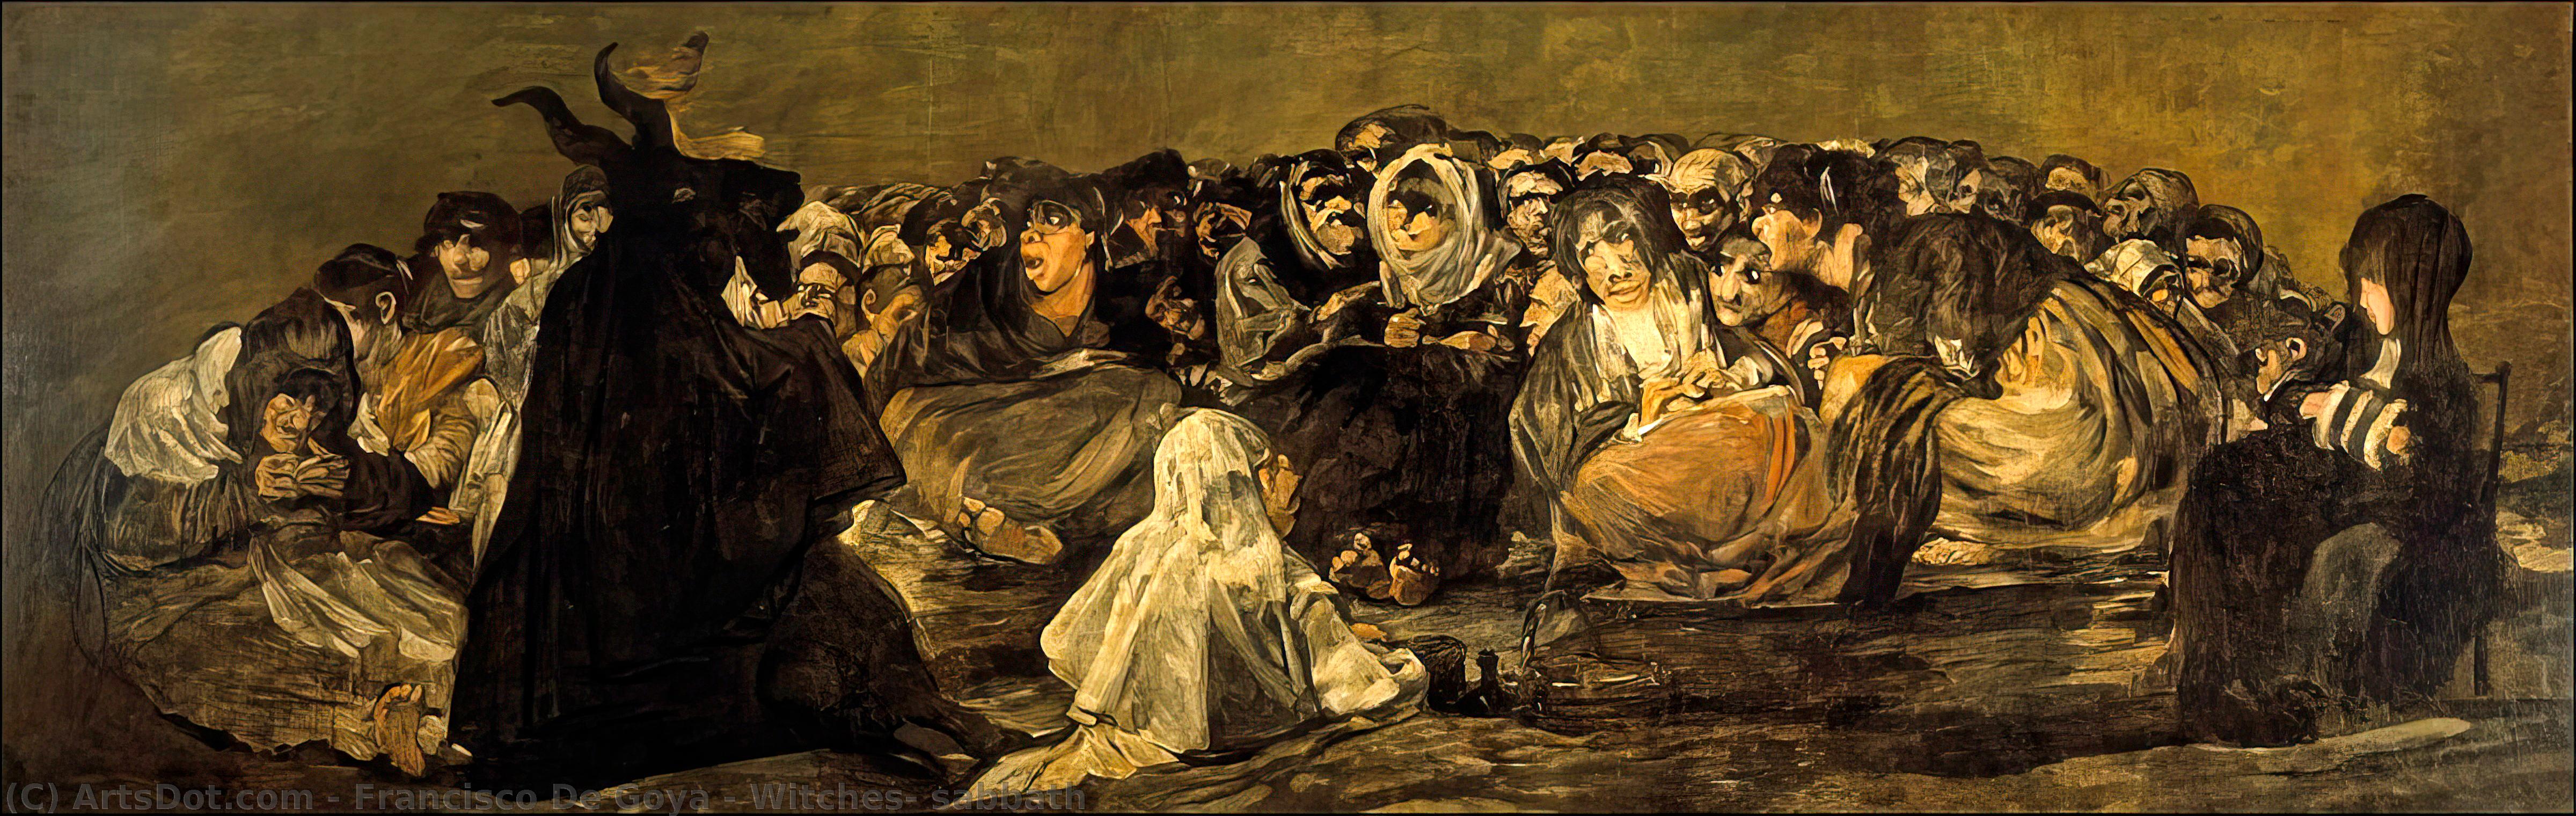 WikiOO.org - Энциклопедия изобразительного искусства - Живопись, Картины  Francisco De Goya - Ведьм суббота